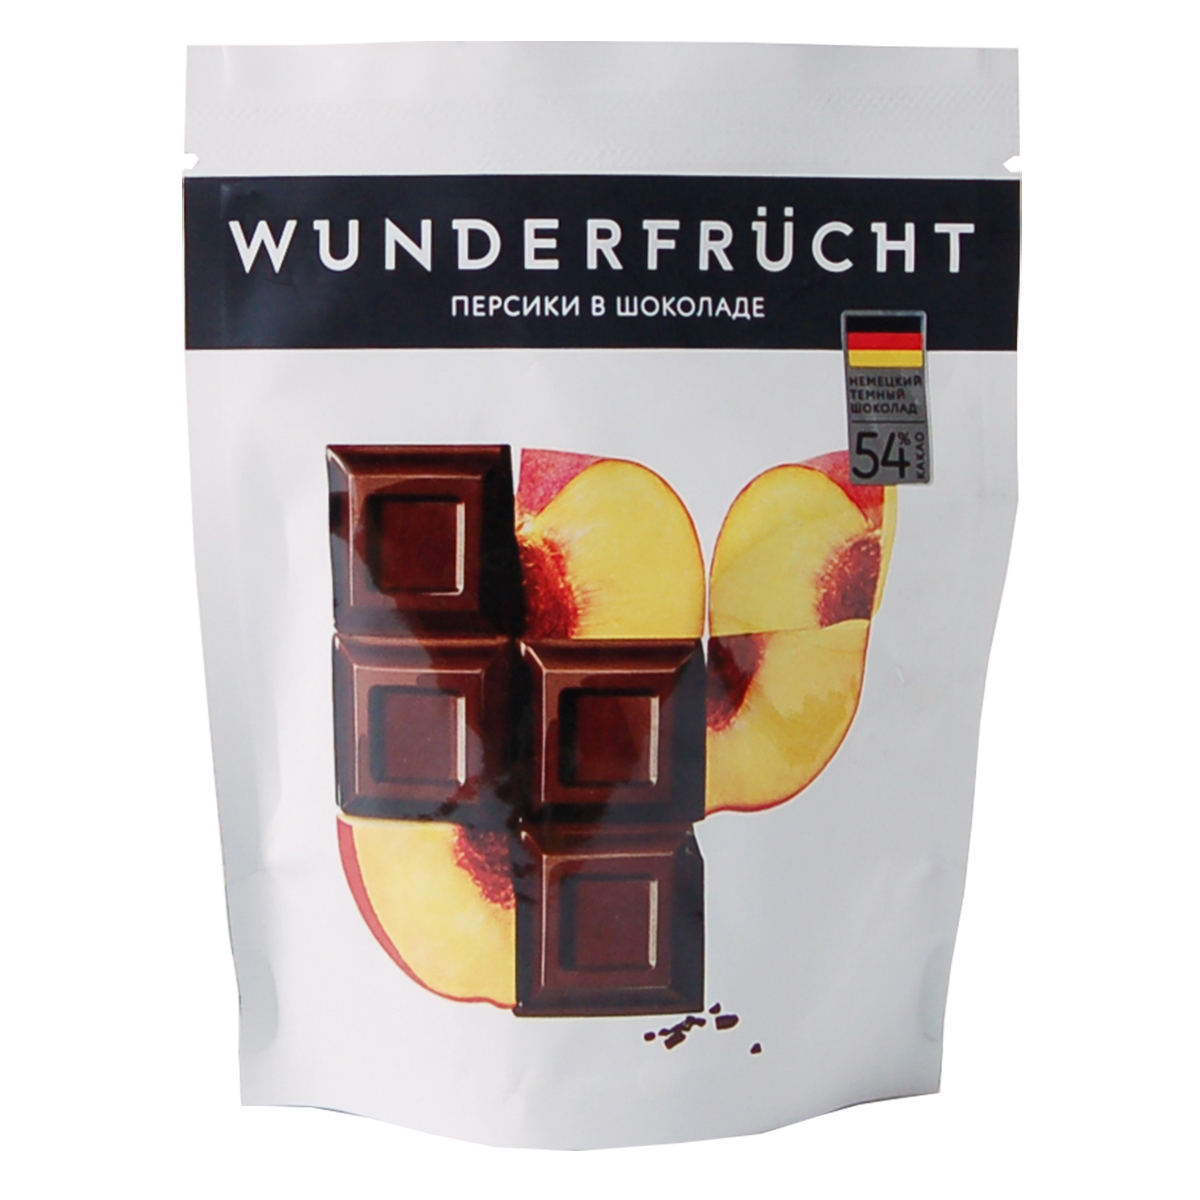 WunderFrucht Конфеты Персик в темном шоколаде 54% 75 г